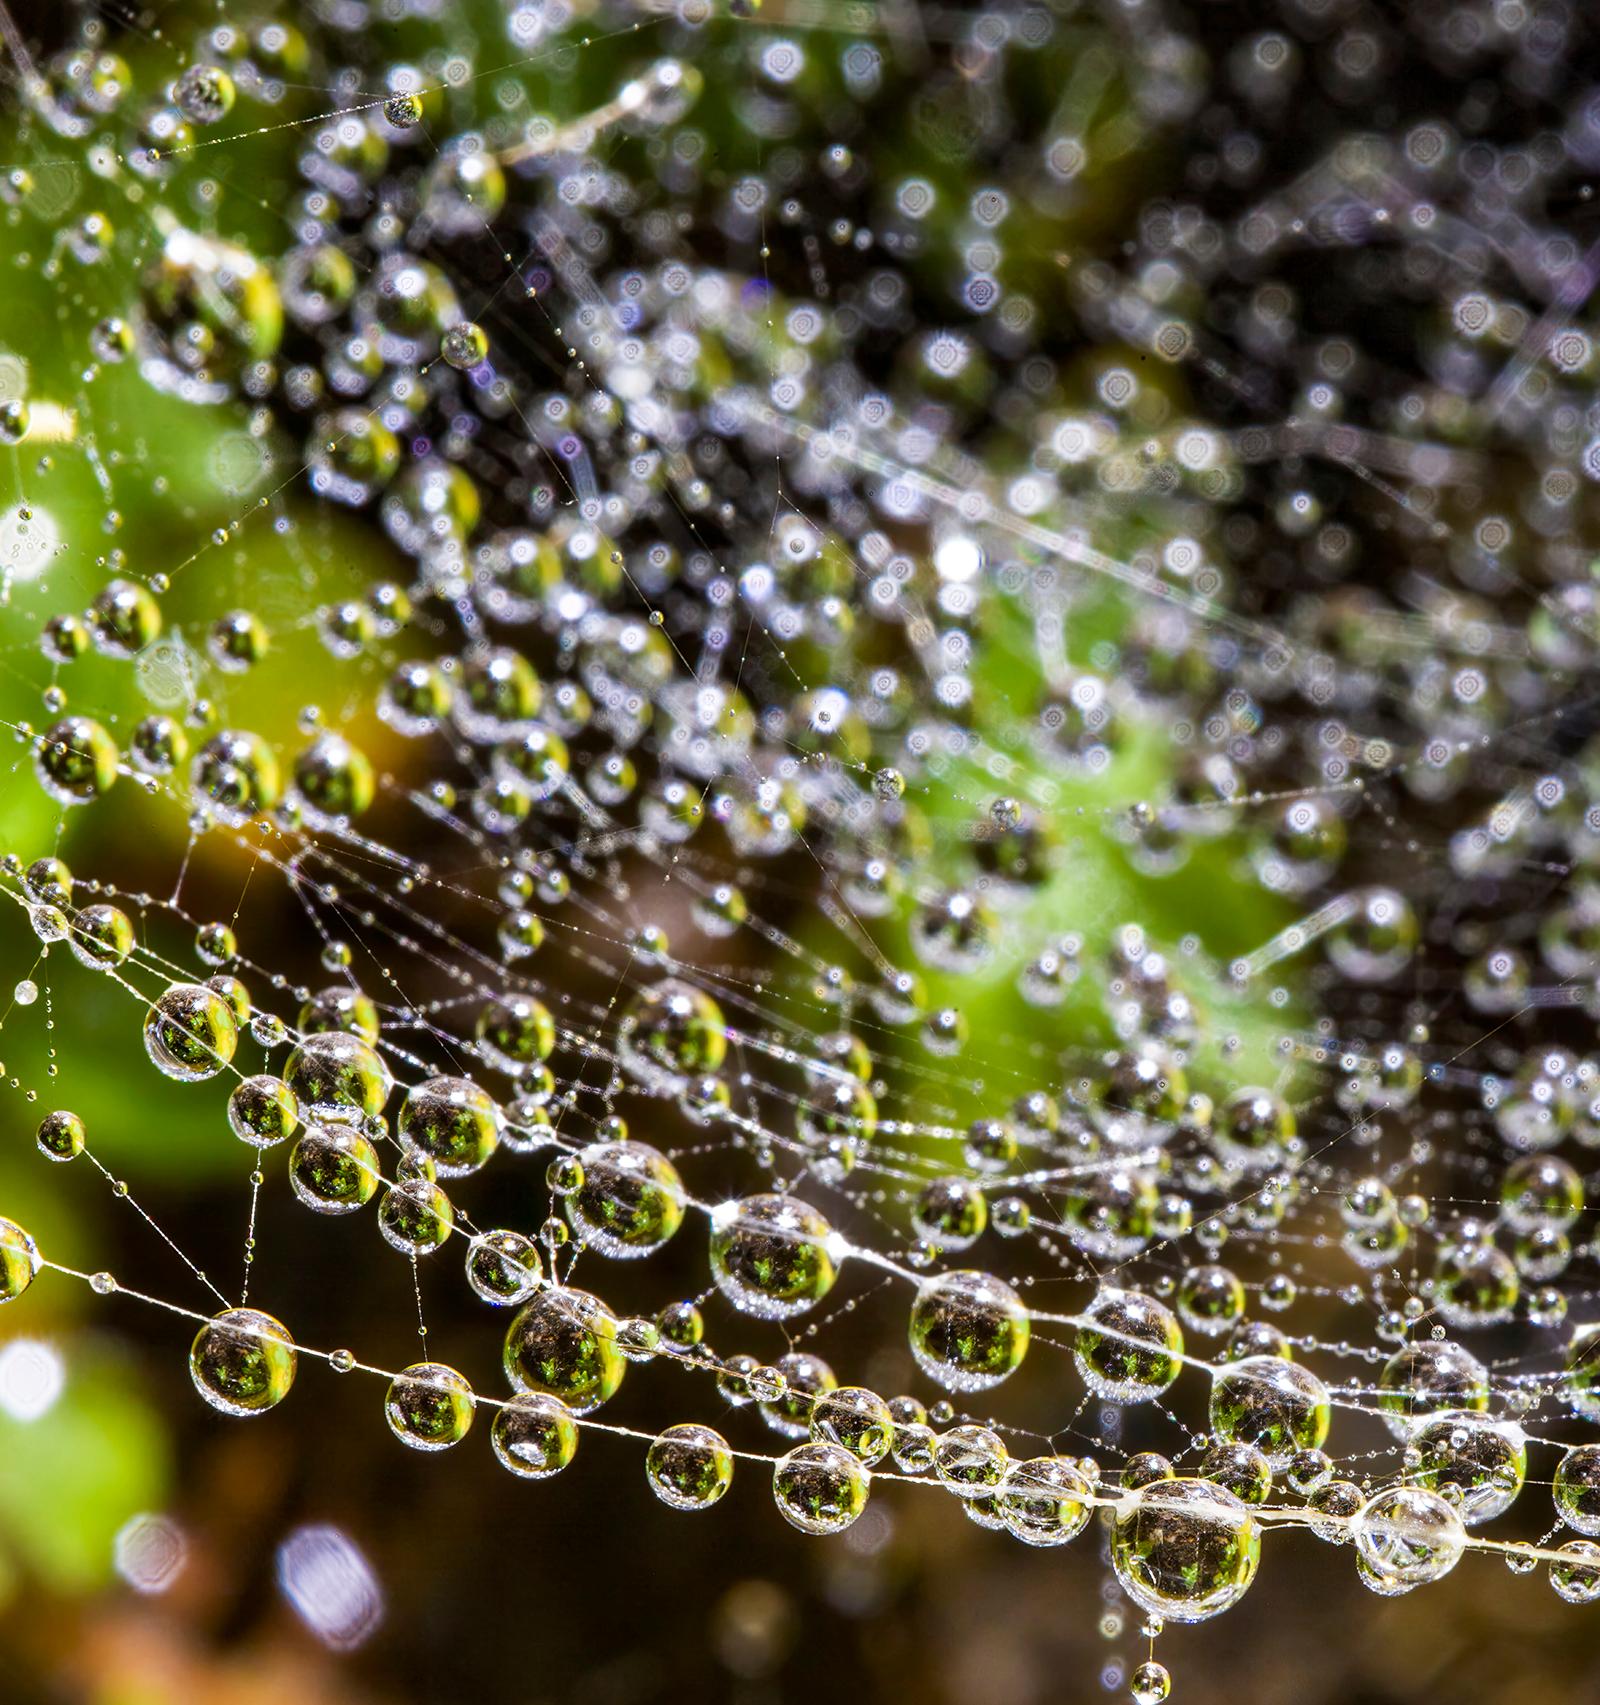 Droplets 1 - Nature limitierte Auflage, Floral grün braun, Contemporary (Zeitgenössisch), Photograph, von Sam Thomas